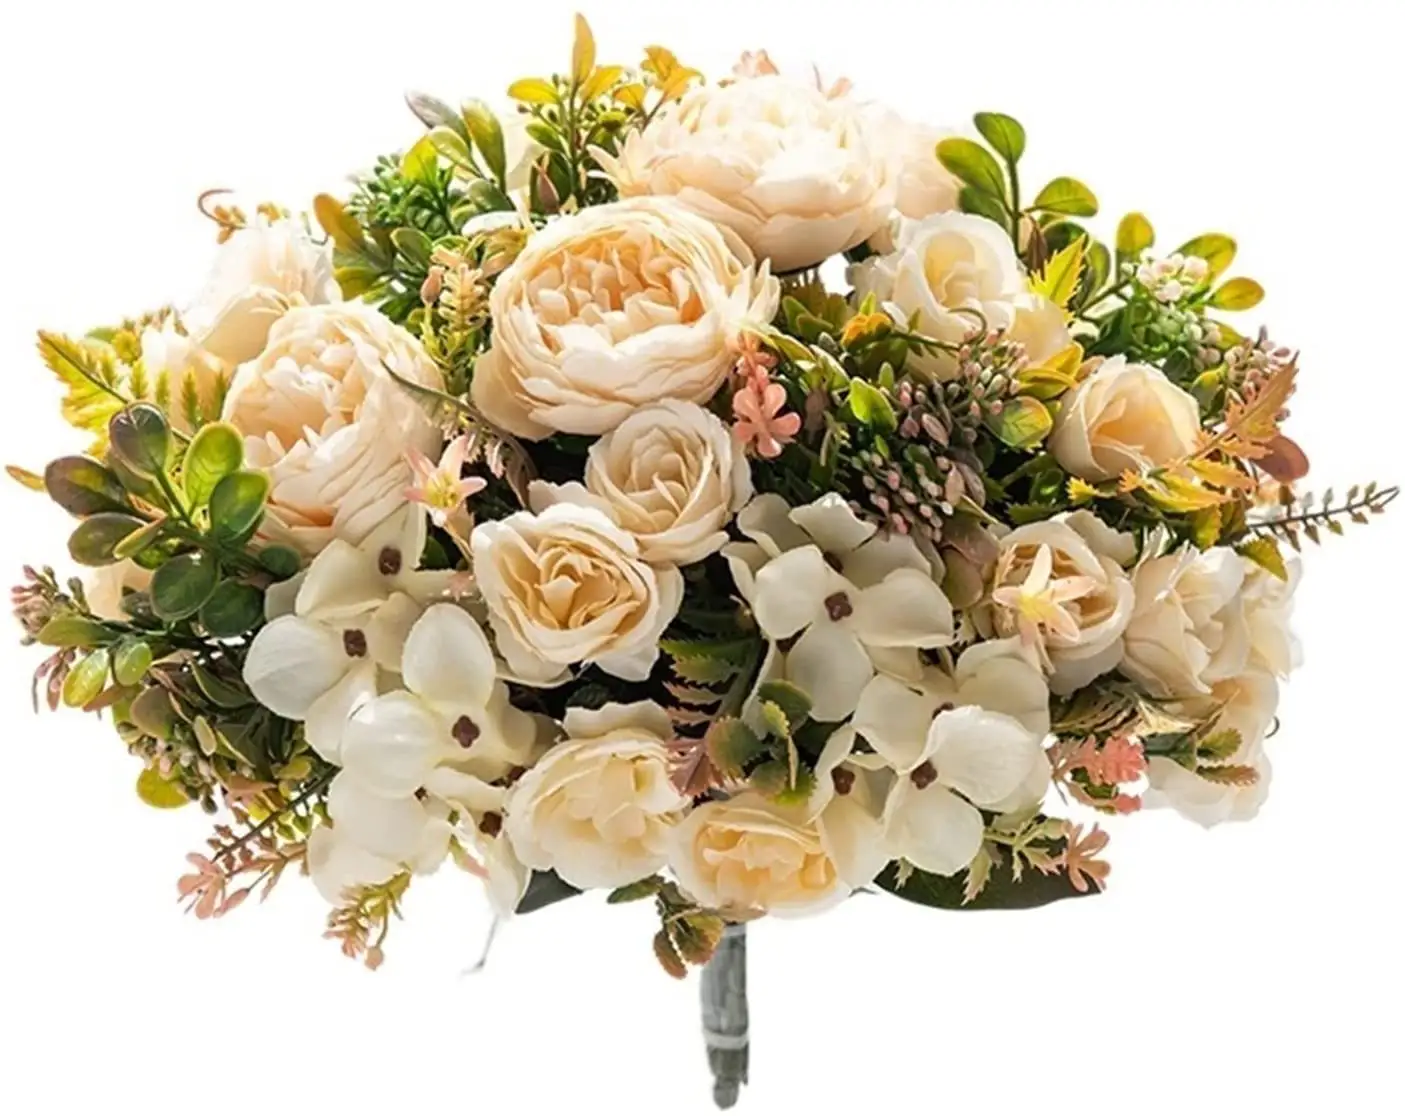 AD-006 Beliebte Produkte künstliche Blume Seiden-Pjeonybogen Blumenstrauß Heimdekoration falsche Rosenblumen